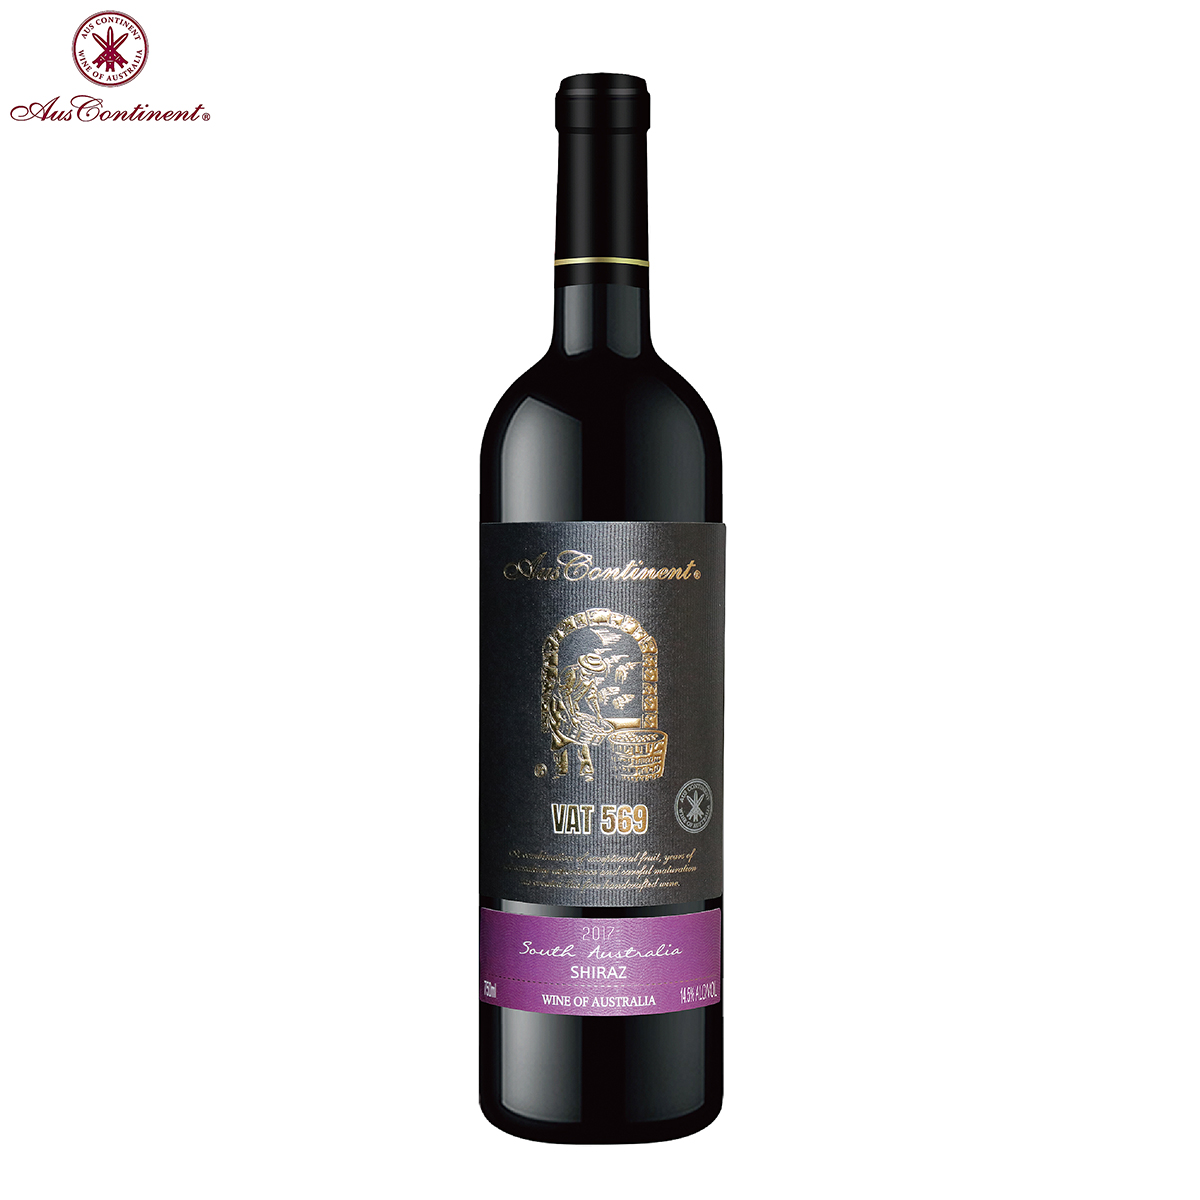 澳大利亚南澳产区澳洲大陆酒庄西拉VAT 569 干红葡萄酒红酒